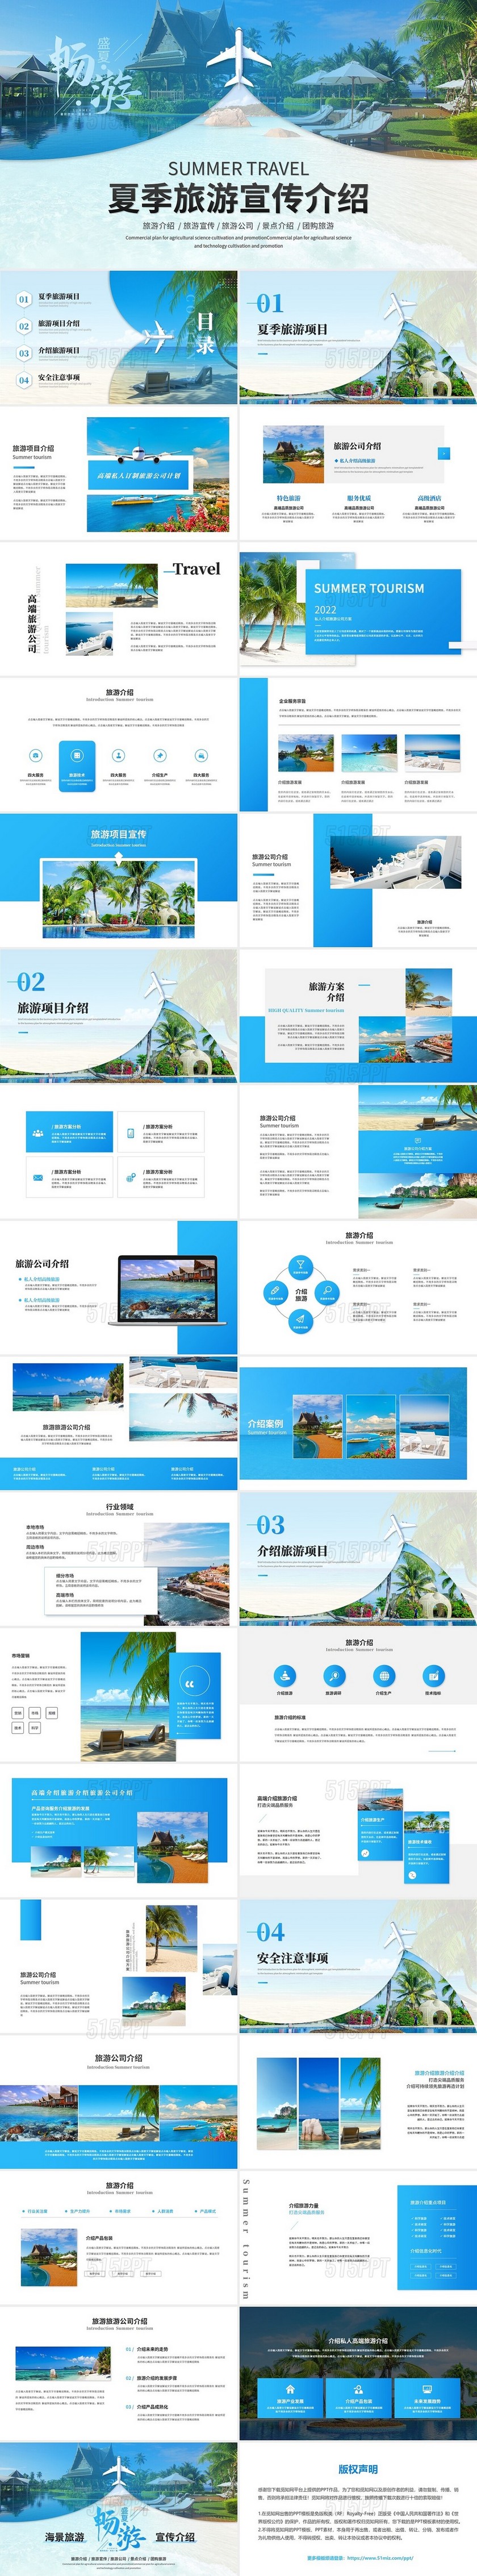 创意简约商务夏季海景旅游宣传介绍旅游画册ppt模板